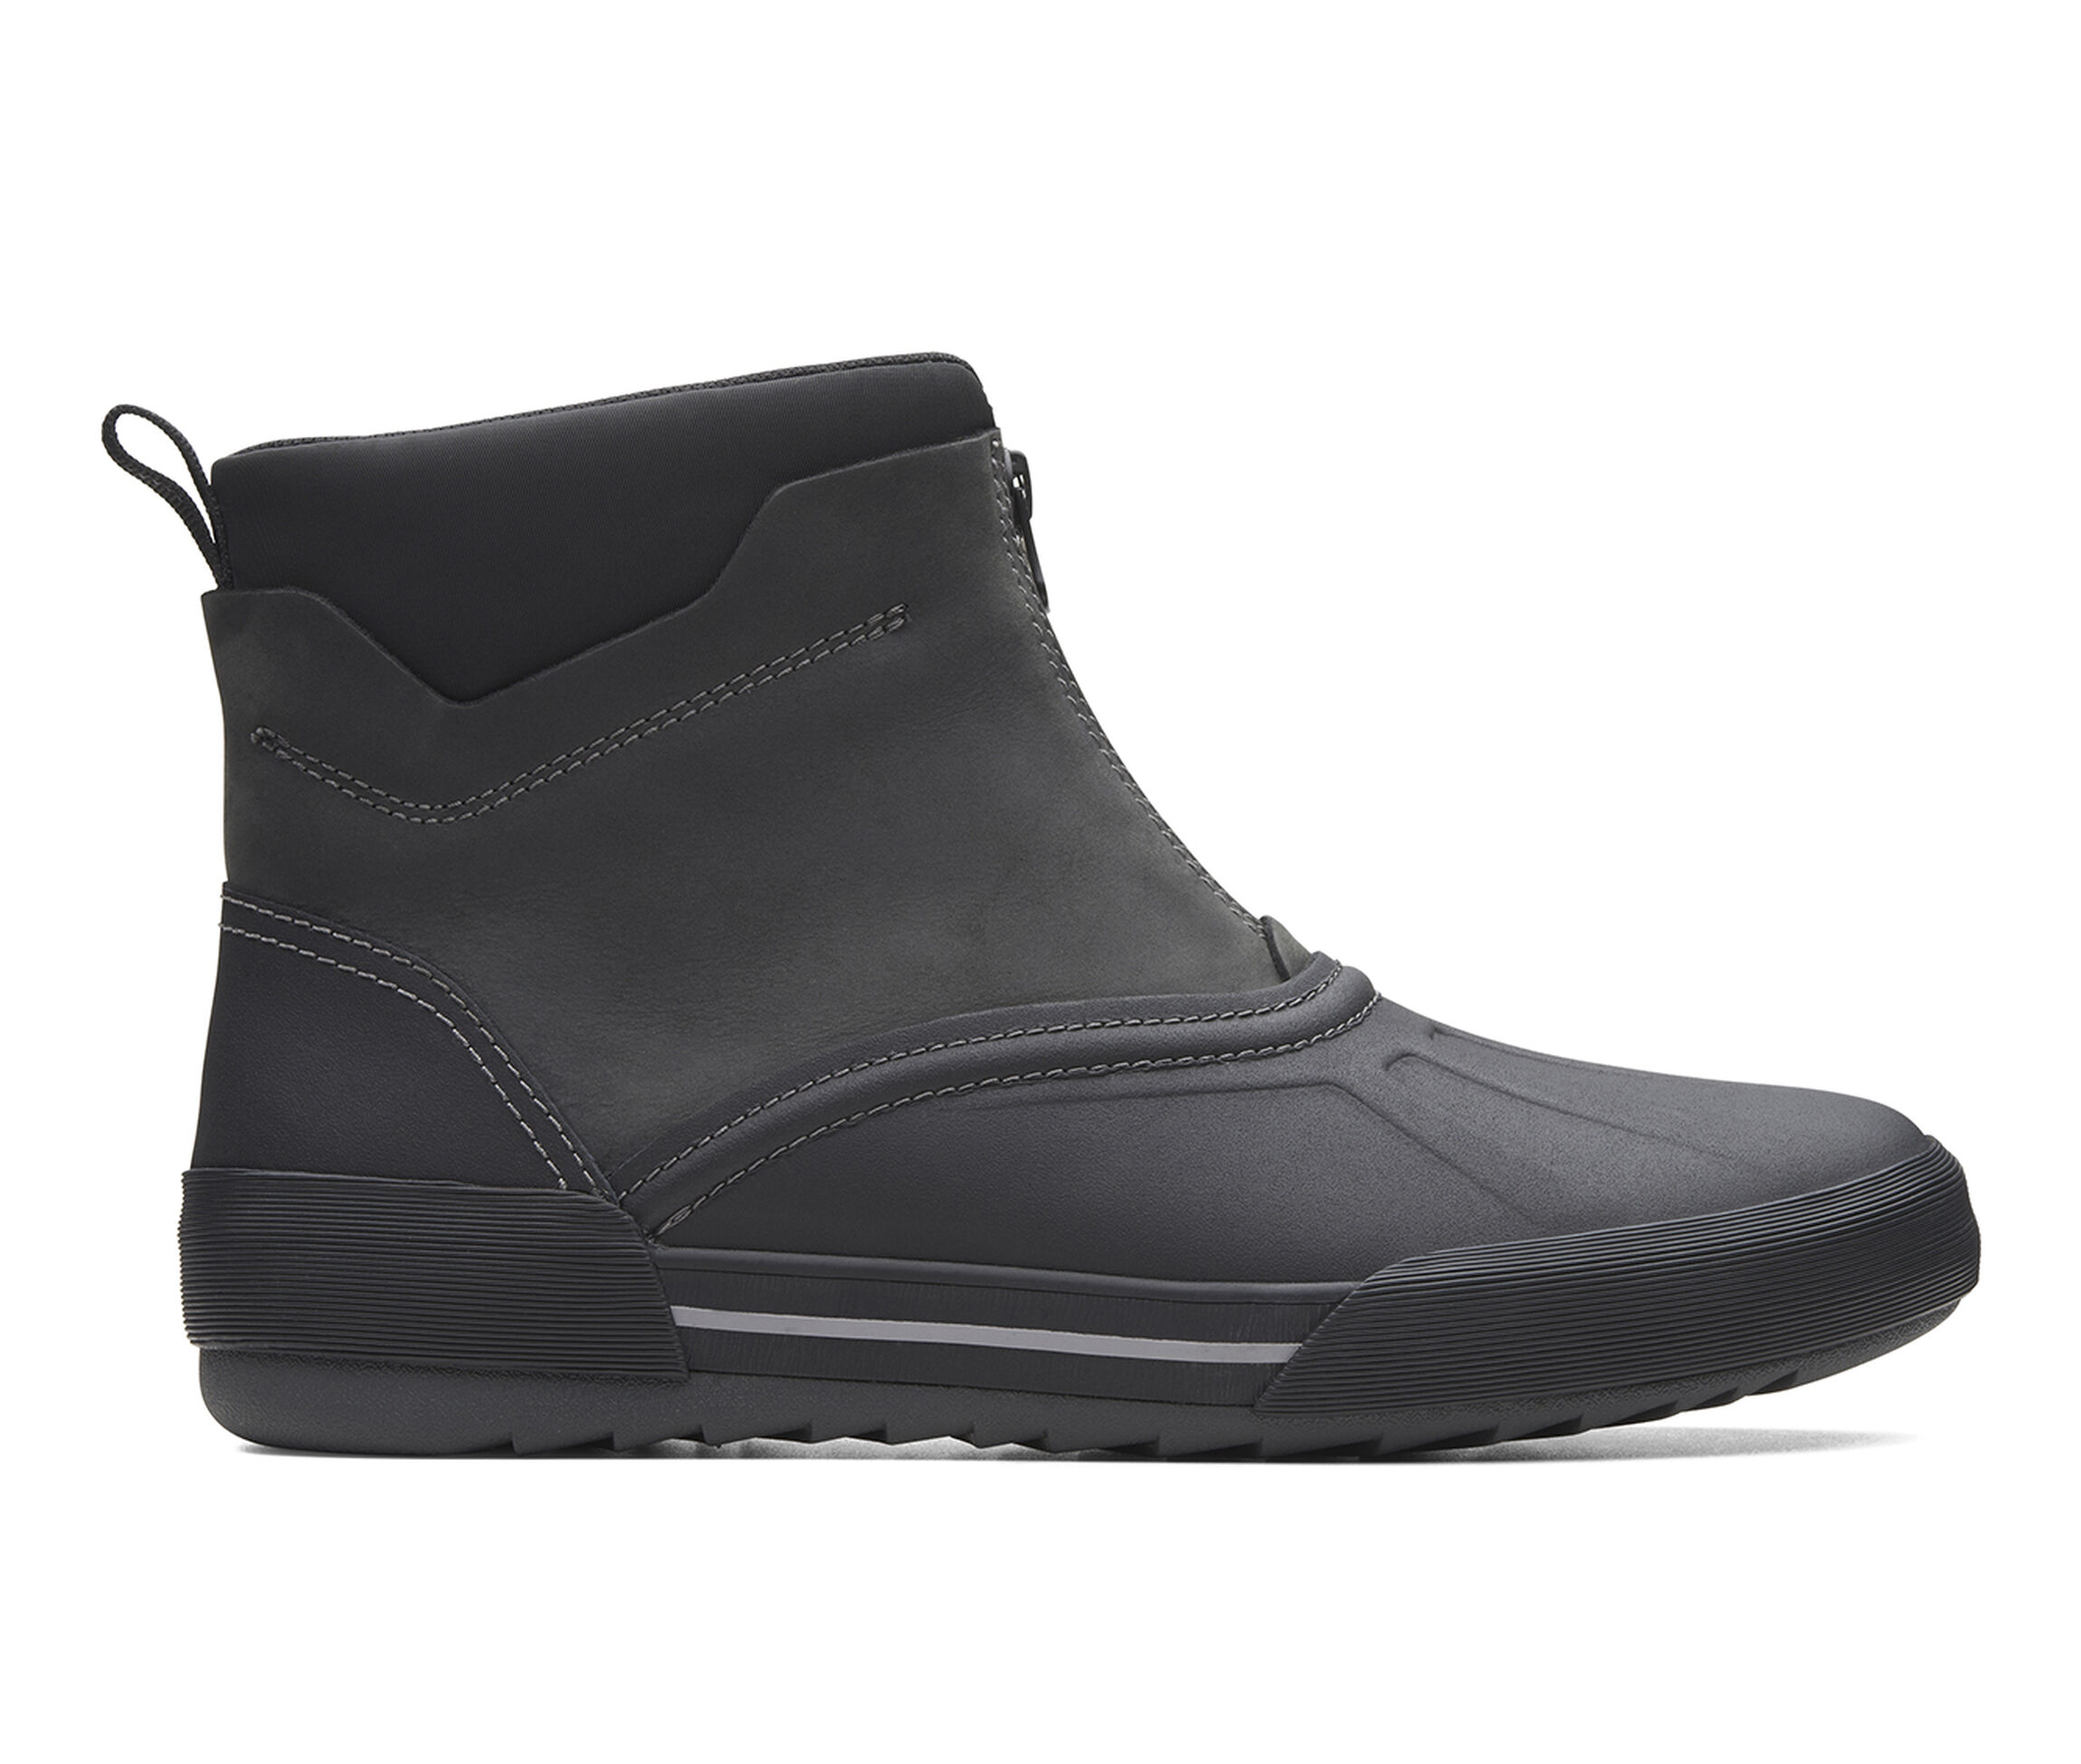 Clarks Bowman Top Men's Boots (Black Leather)